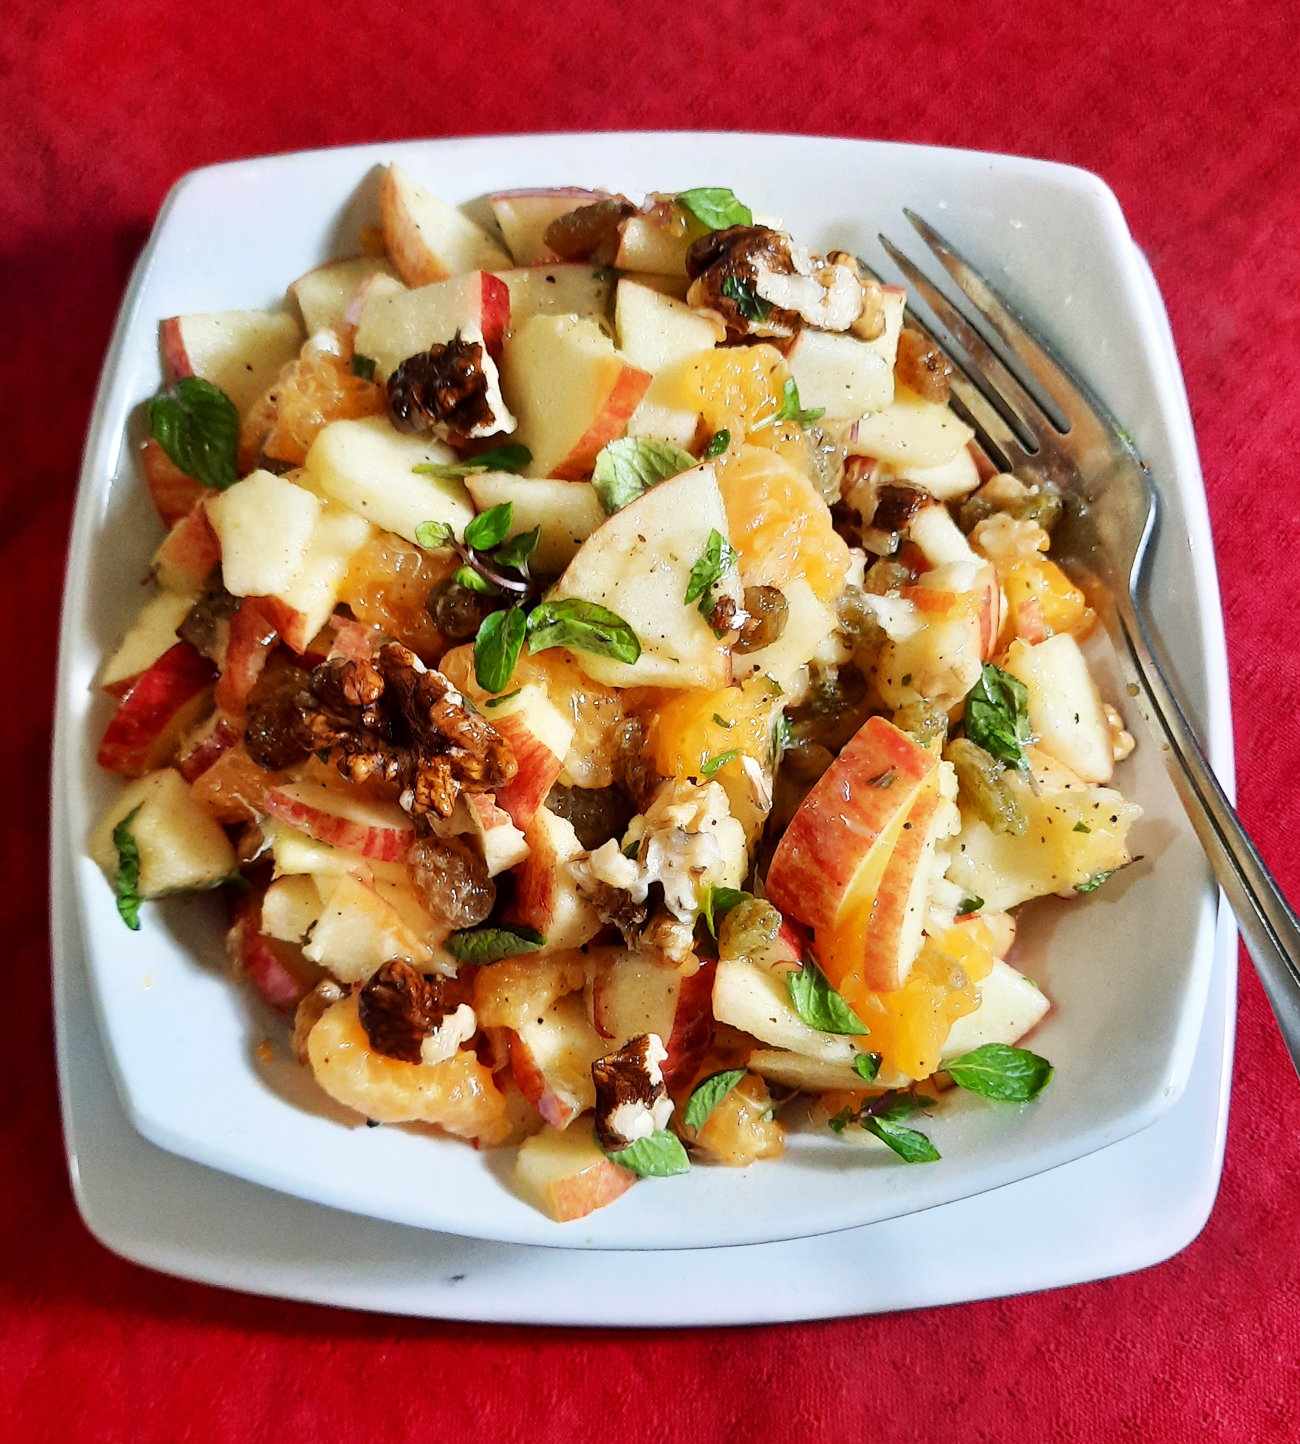 Feel-Good Apple and Orange Salad Recipe